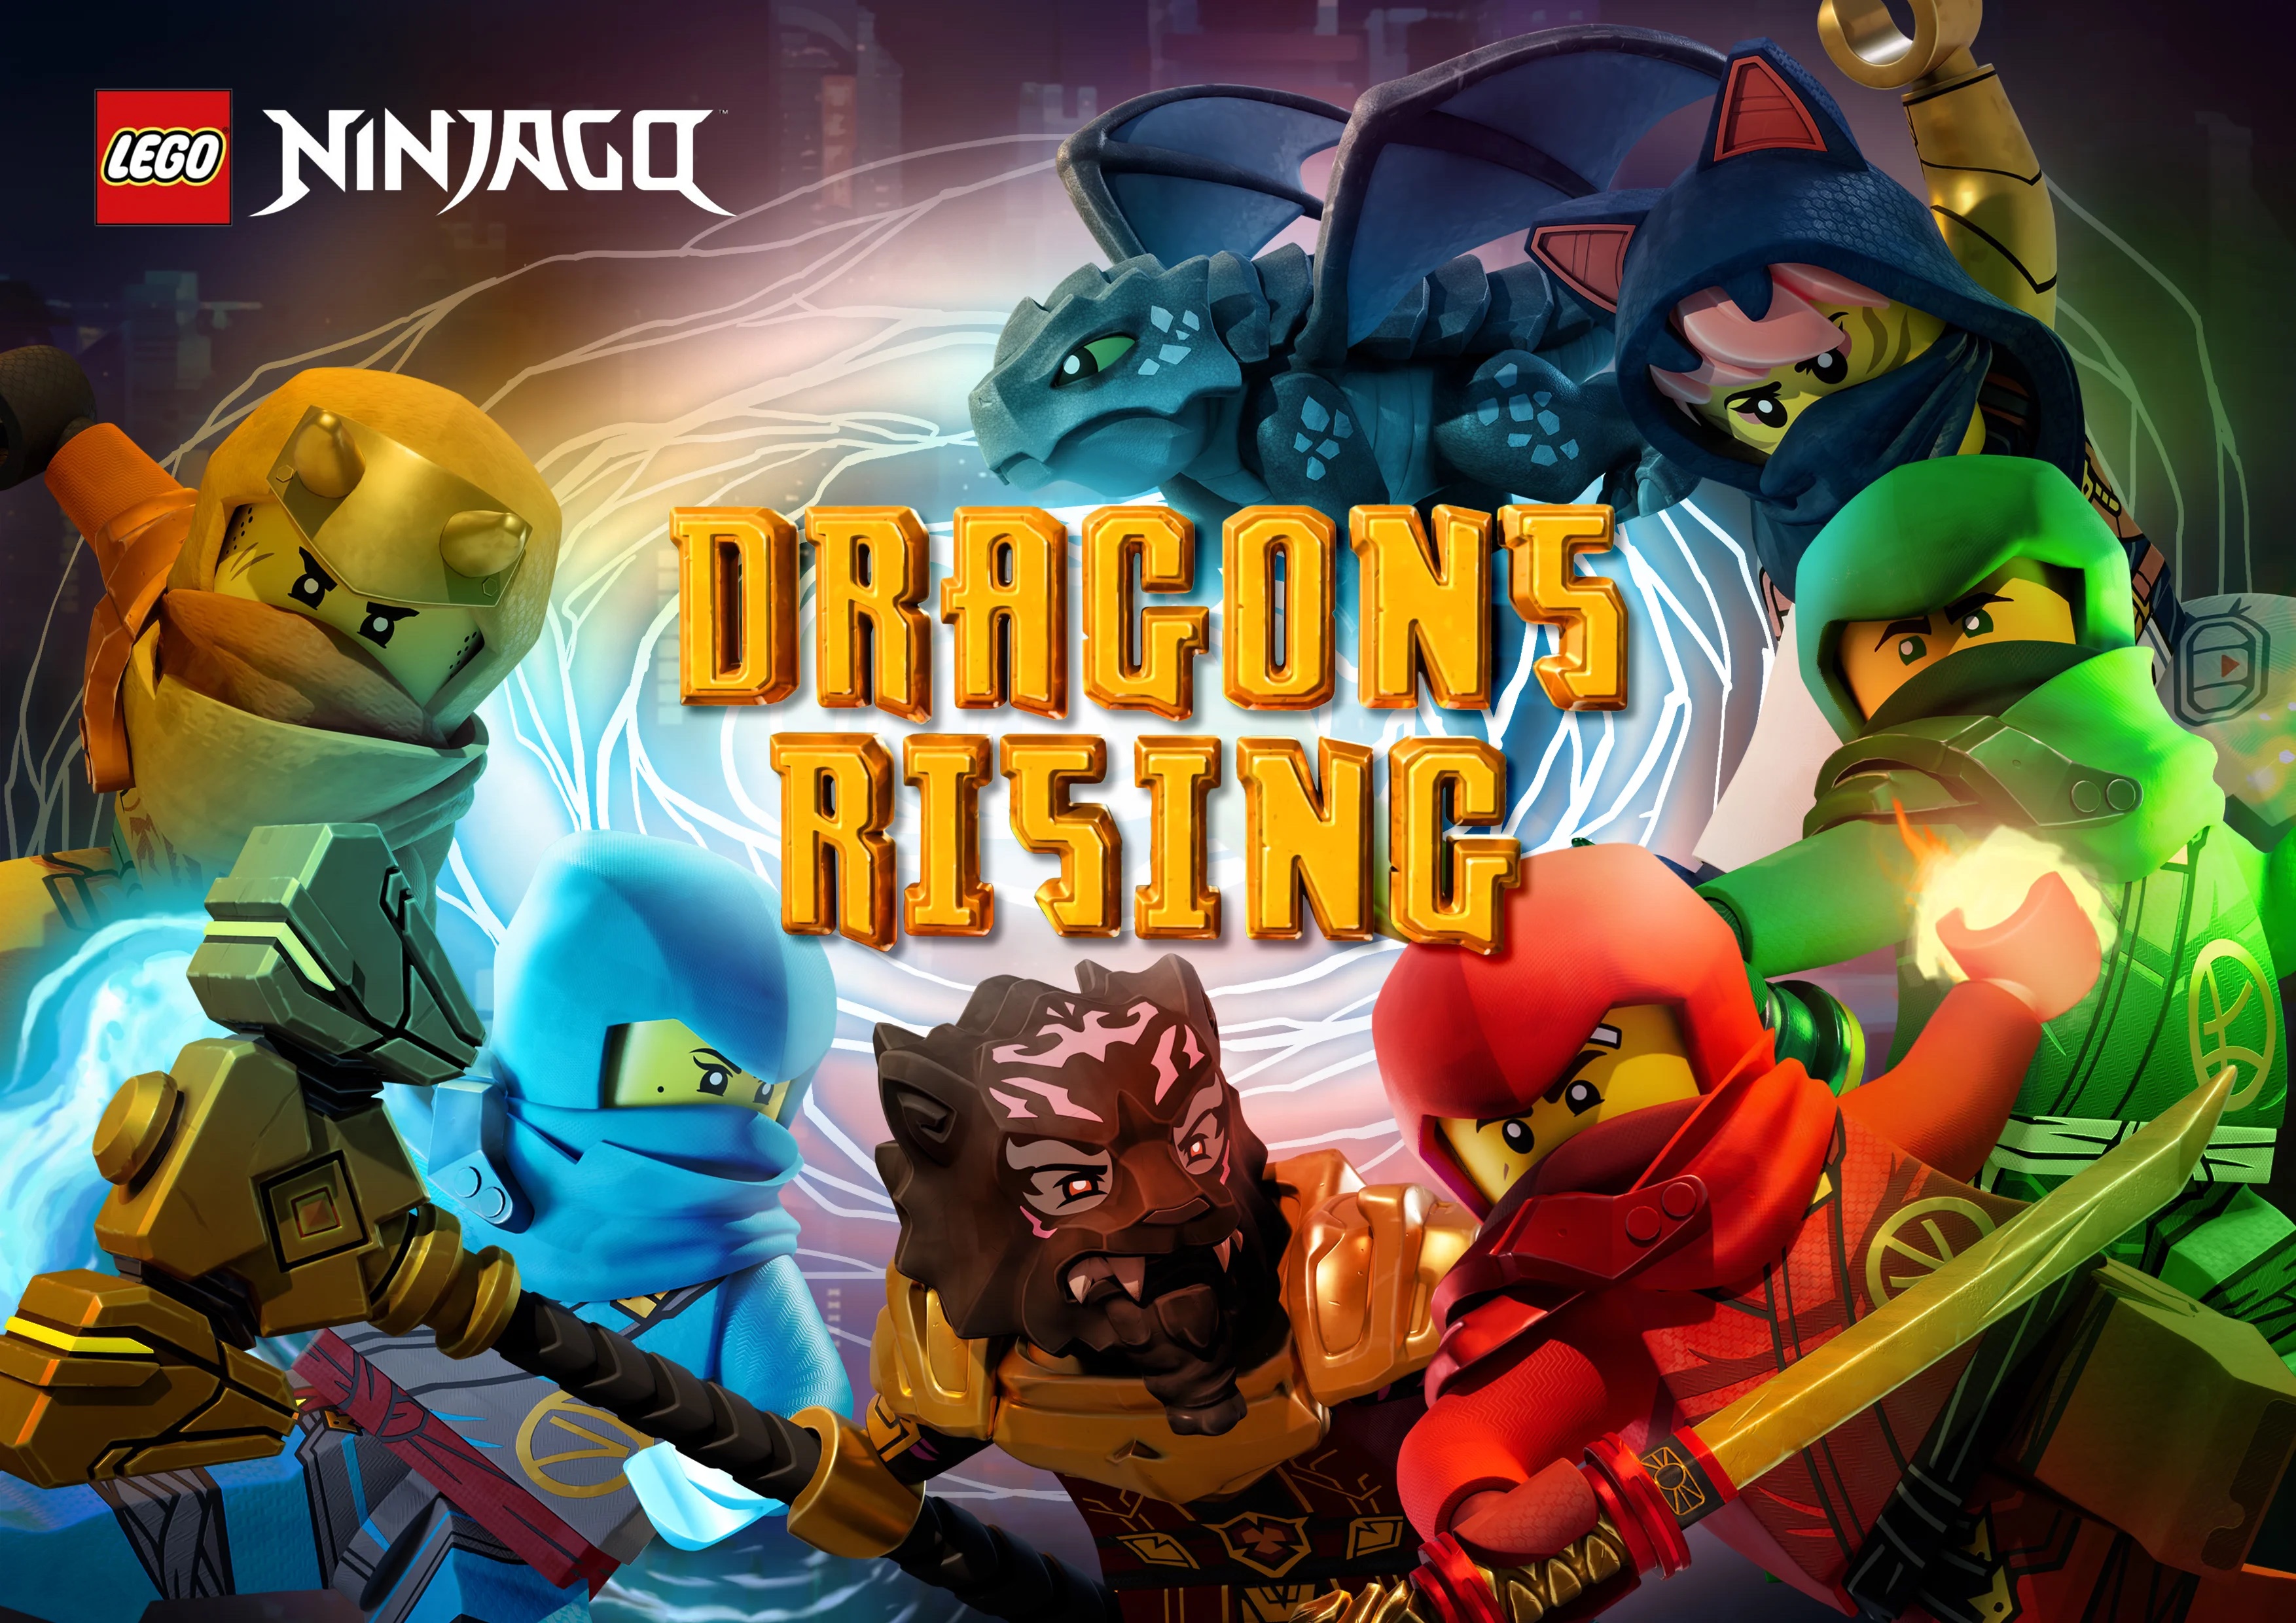 Lego Ninjago Dragons Rising Season 1